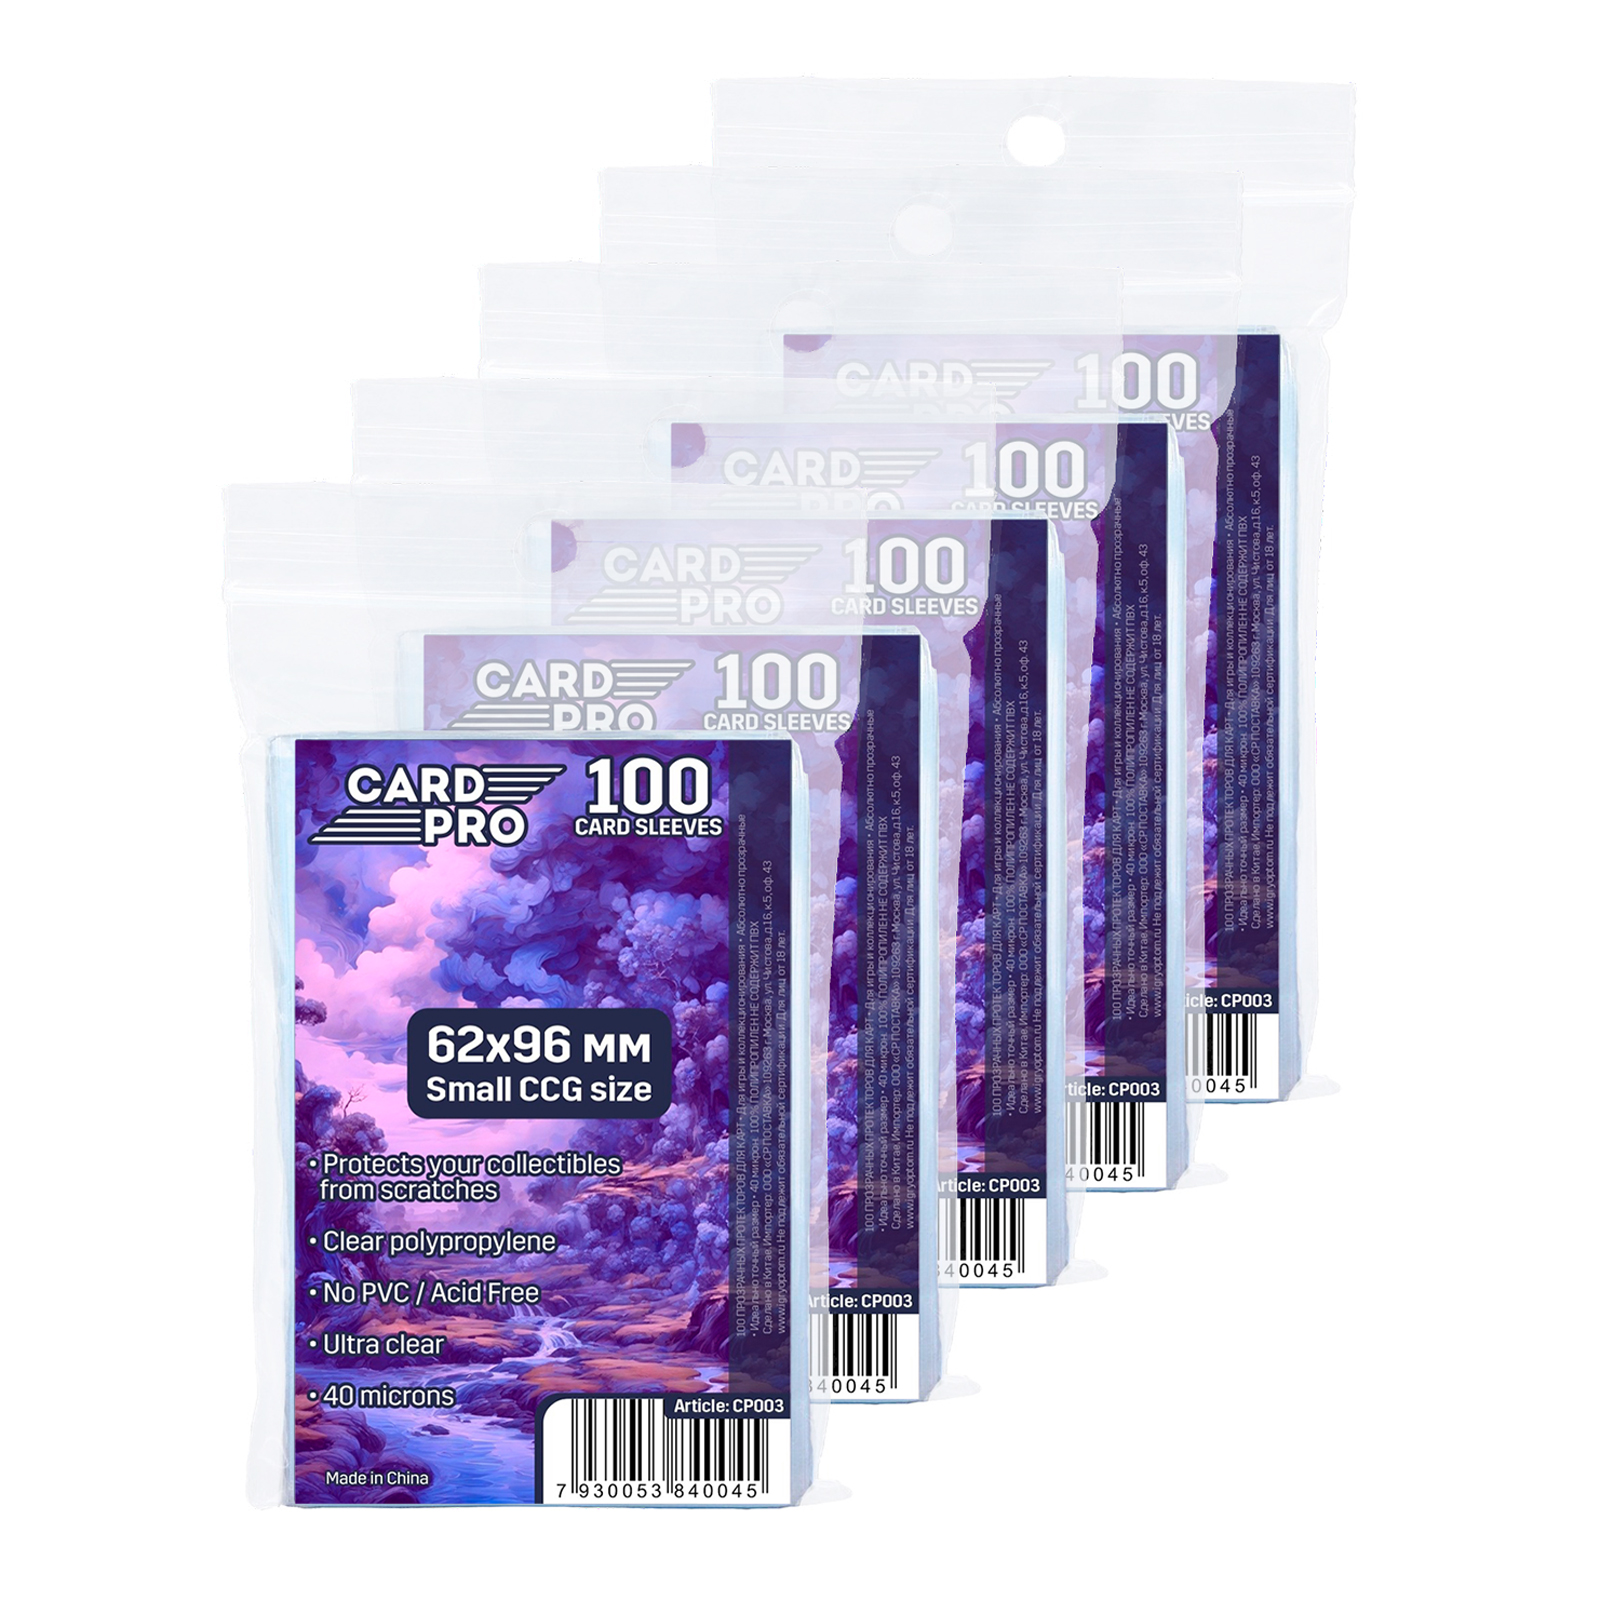 Протекторы Card-Pro small CCG size 62x96 мм 5 пачек по 100 шт для карт Алиас Скажи Иначе